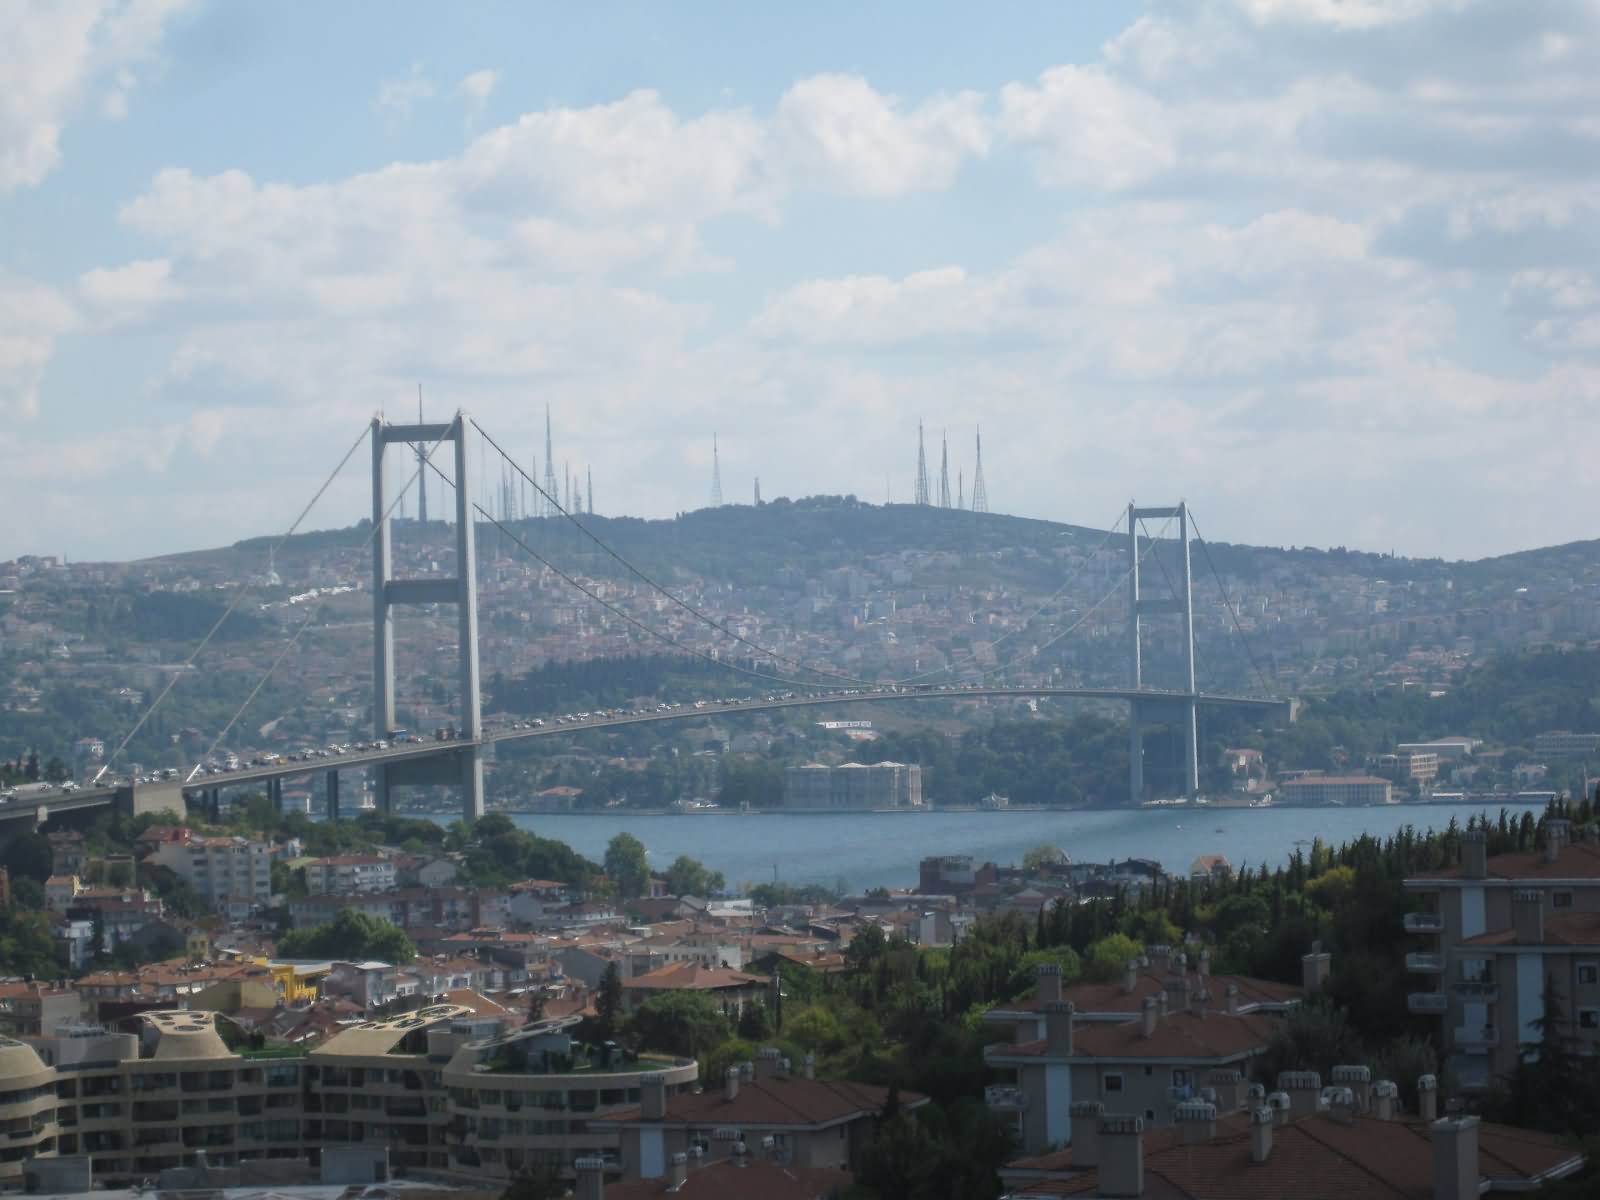 The Bosphorus Bridge Image